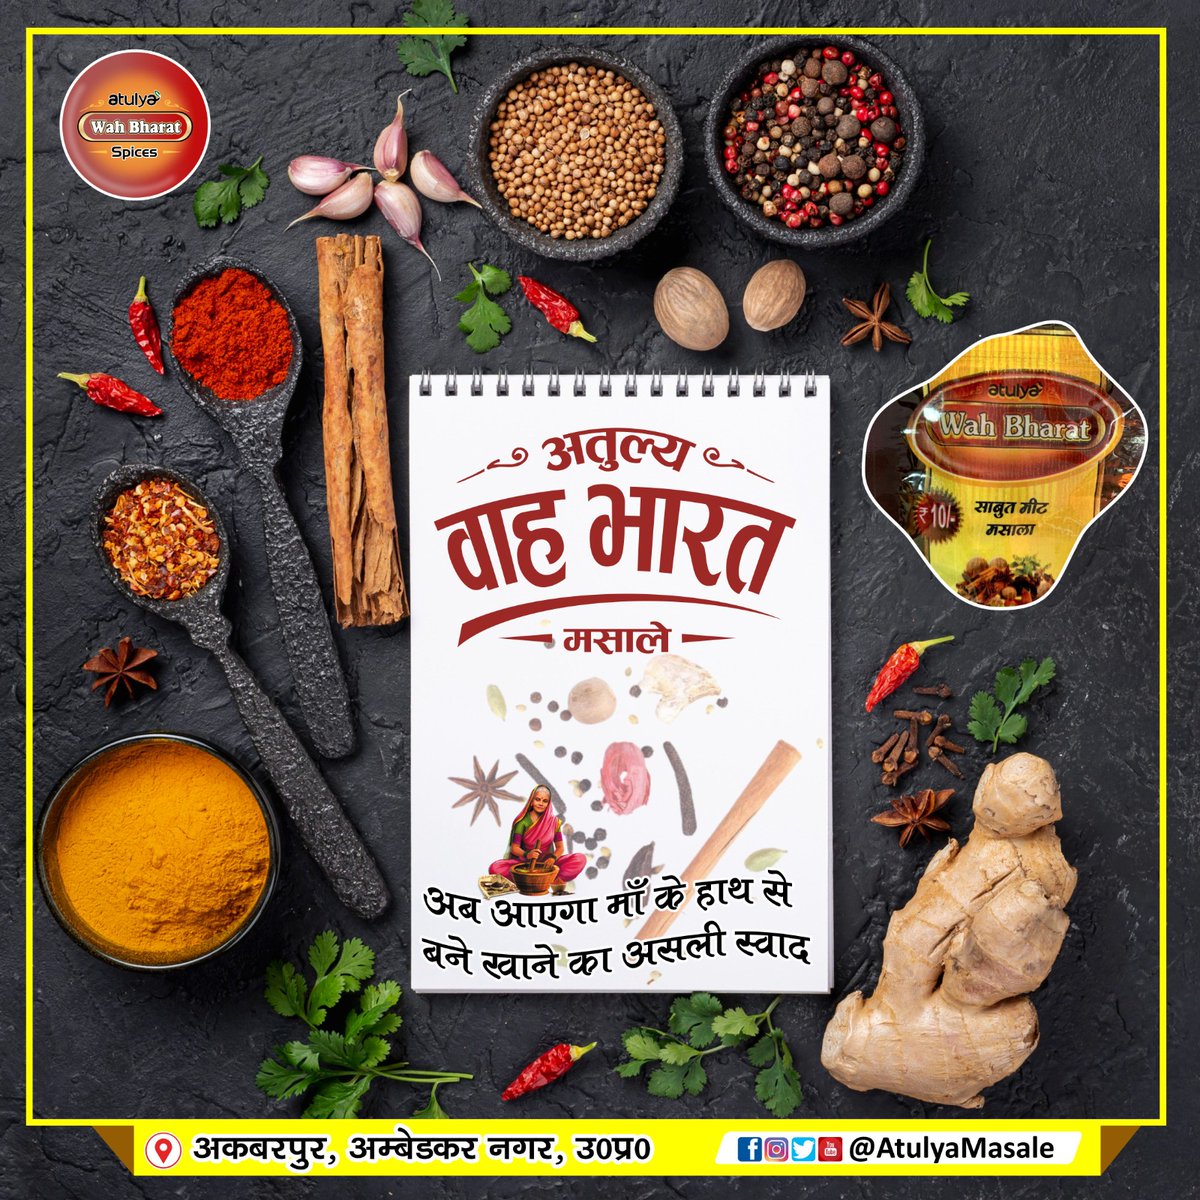 'अतुल्य वाह भारत' गरम मसाला: स्वाद का राजा, सेहत का संगी
आपके रसोई में गरमी भरे और स्वादिष्ट अनुभव के लिए 'अतुल्य वाह भारत' गरम मसाले का प्रयोग करें व कराएं !
#GaramMasala #Spice #AtulyaMasale #AtulyaWahBharatMasale #AtulyaMasaleAkbarpur #SPTmmedia #DeshiMasala #Desimasala